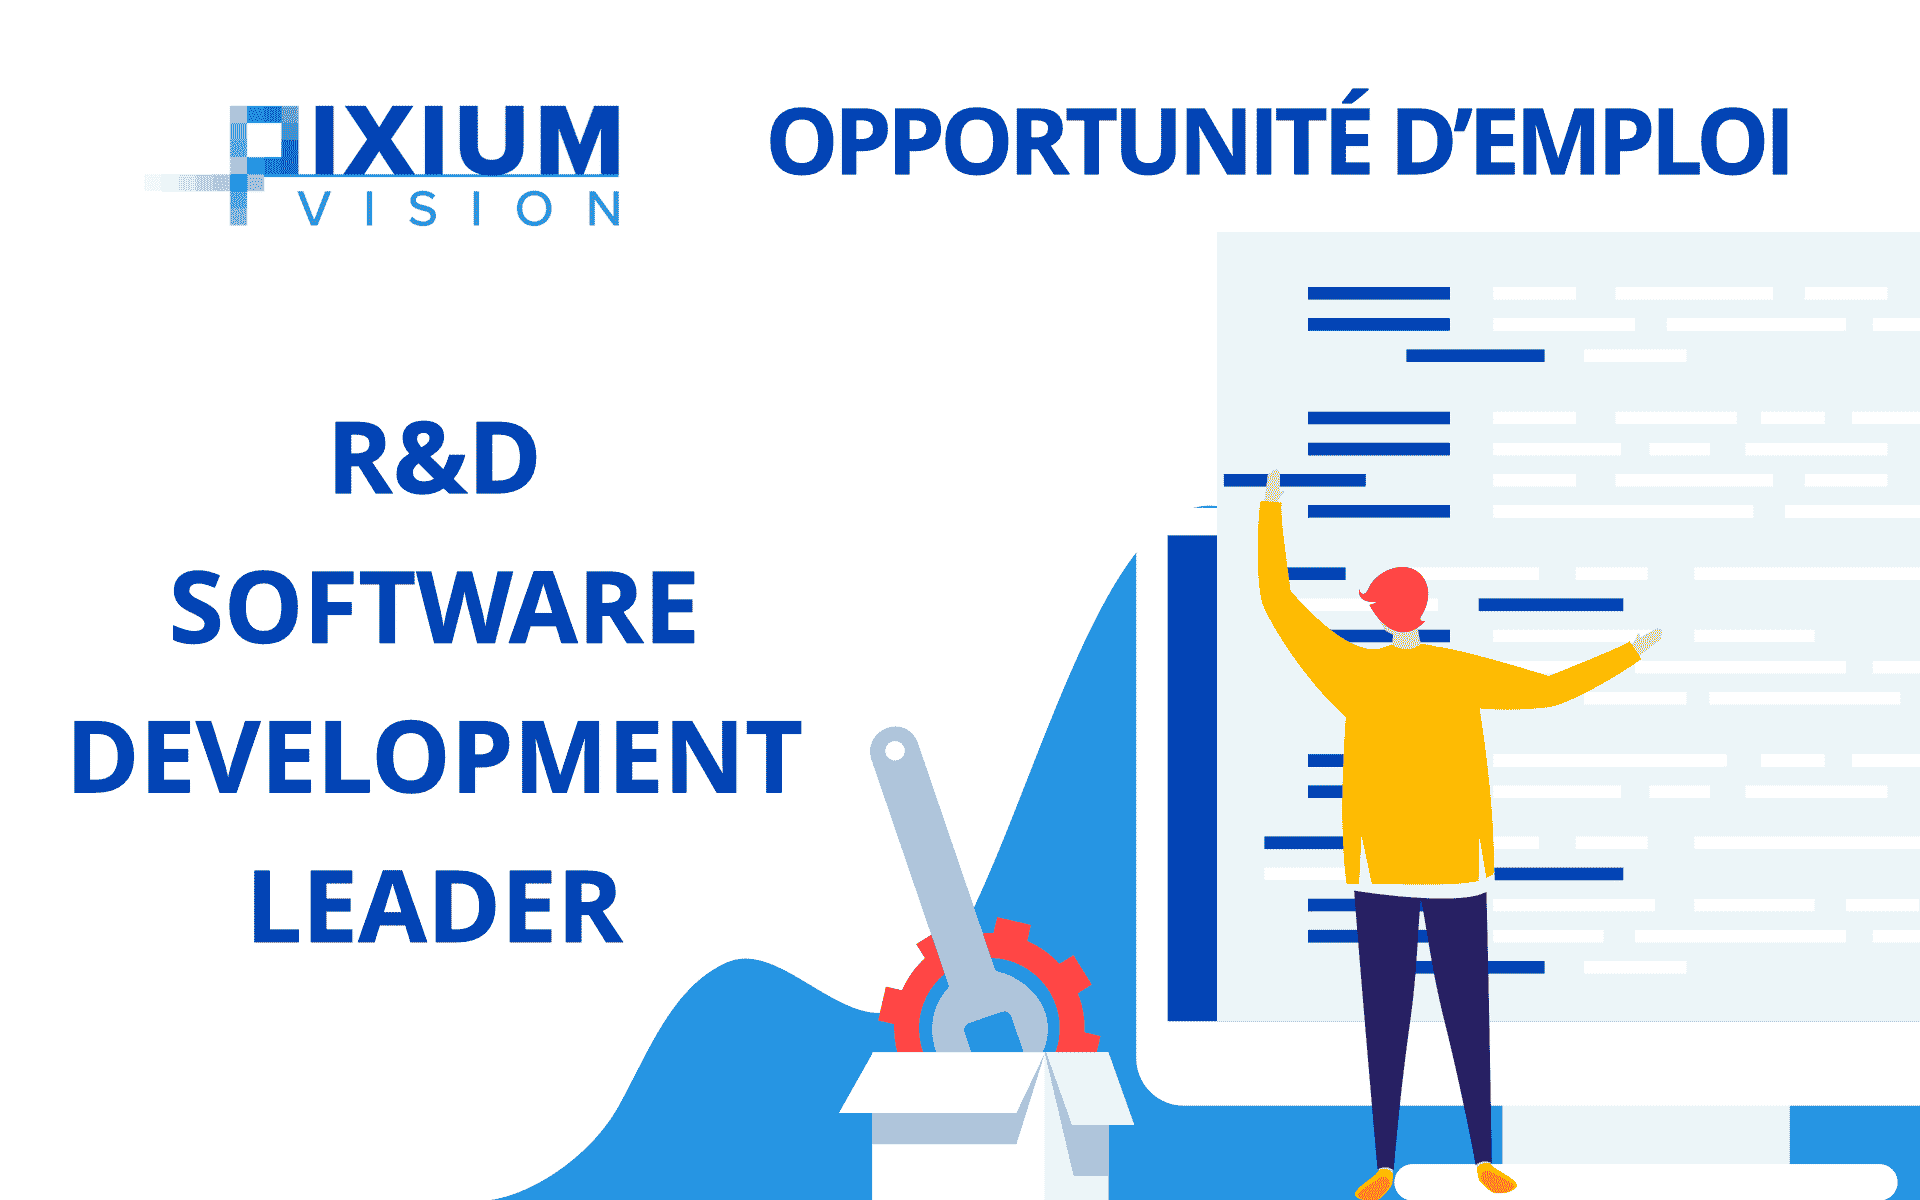 R&D Software Development Leader